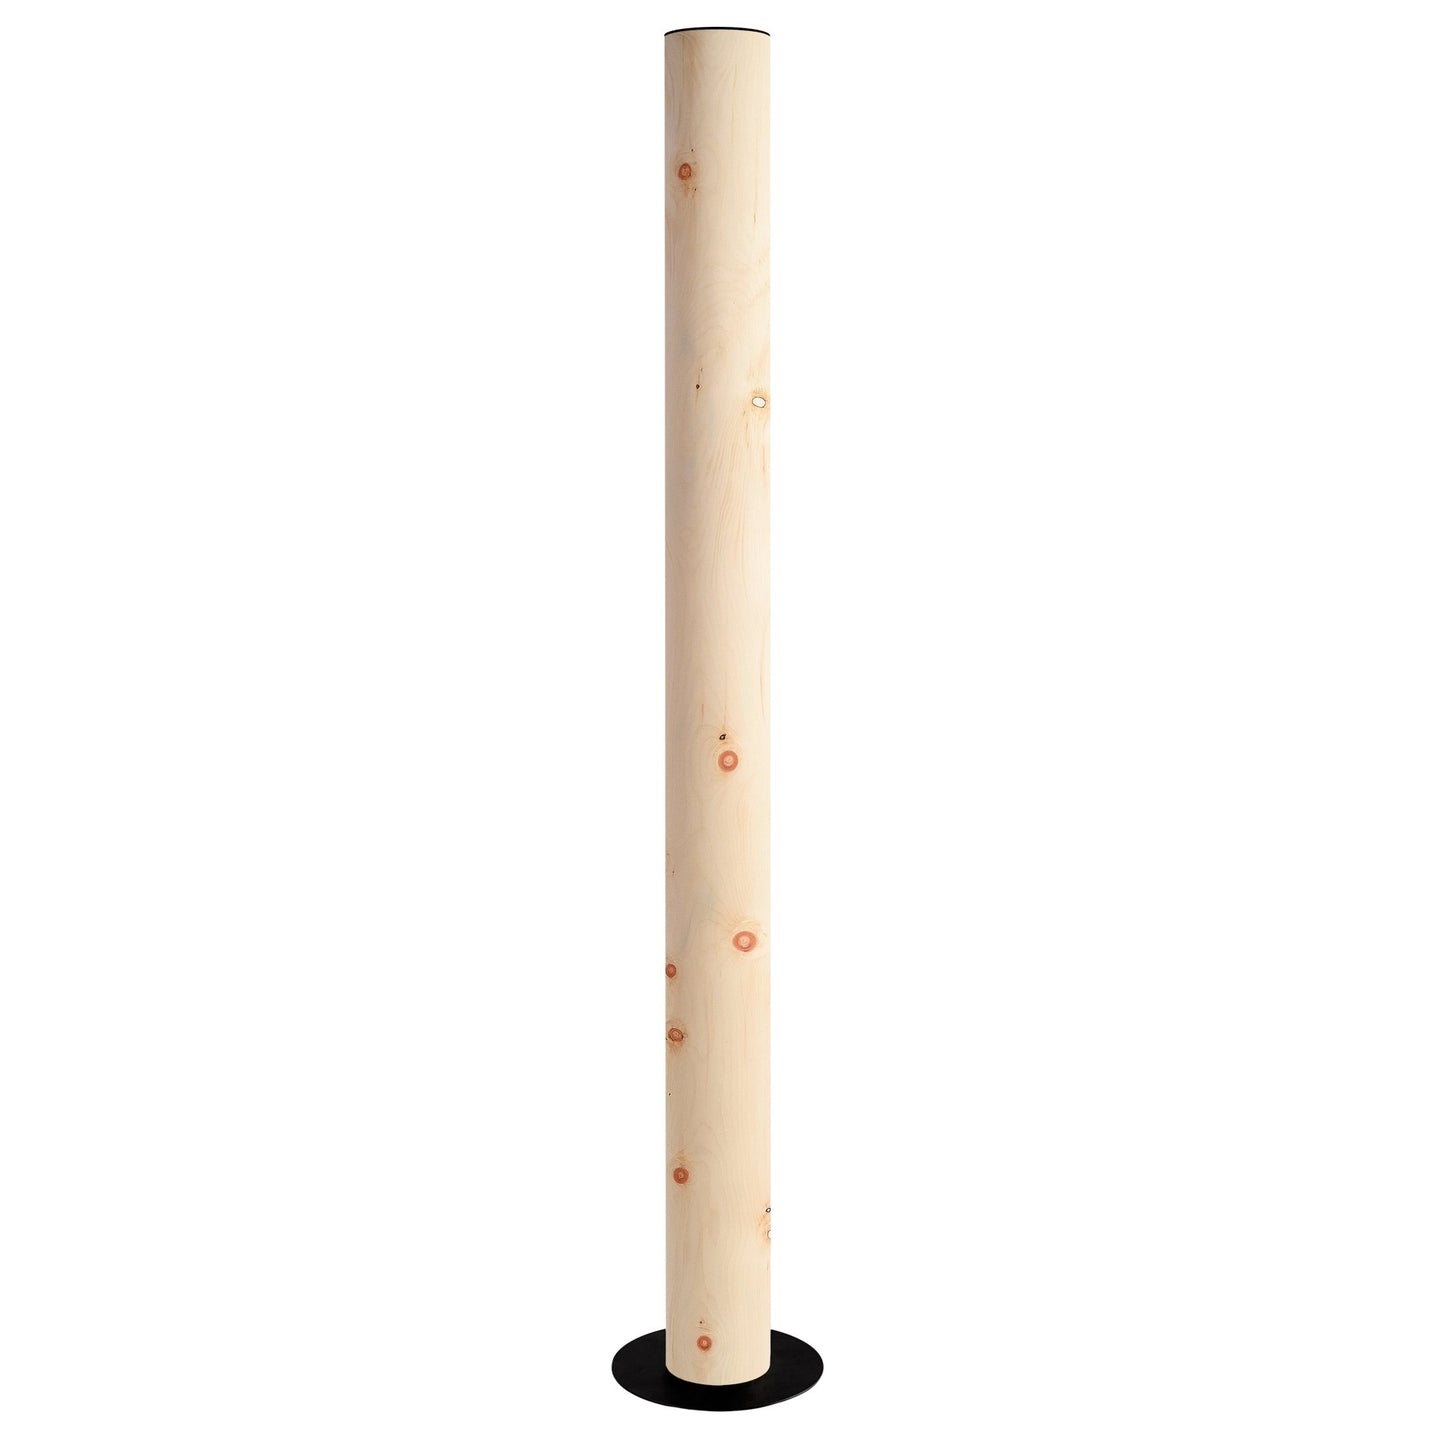 Columna Stehlampe Zirbe - Stehleuchte - Leuchtnatur